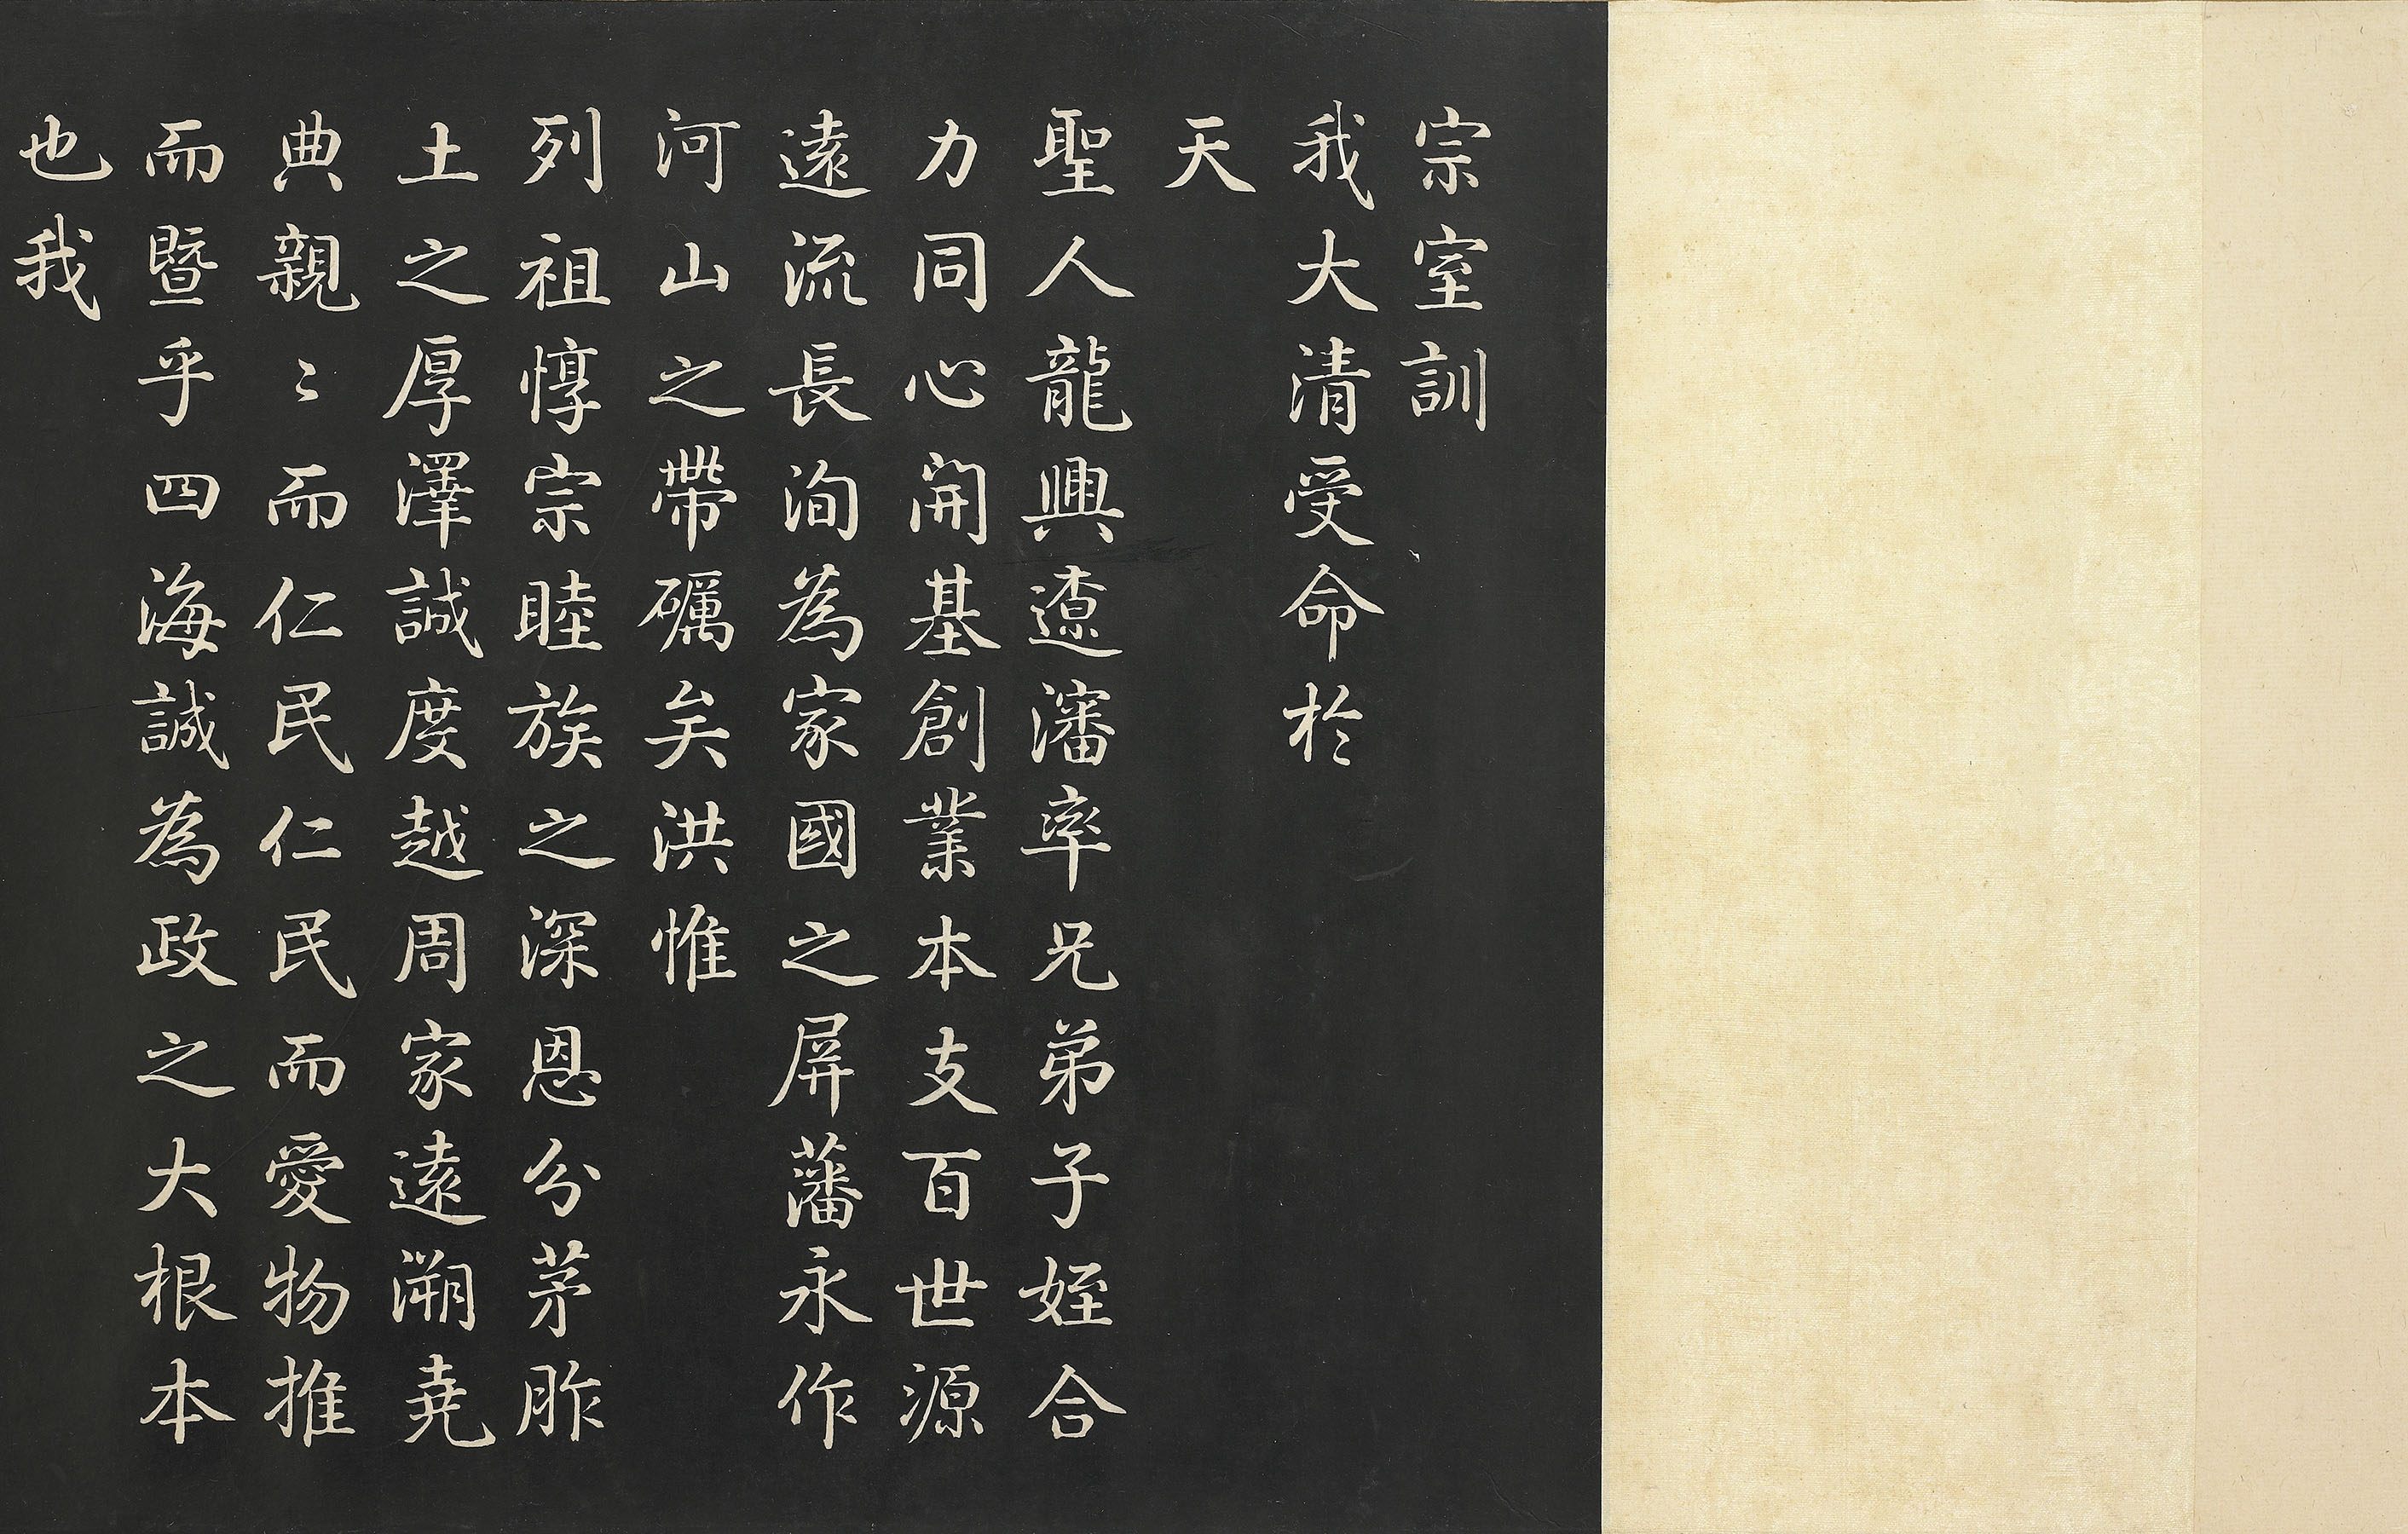 Jiaqing Yuzhi Zongshi Xun (Imperial Family Instructions by Emperor Jiaqing)preview